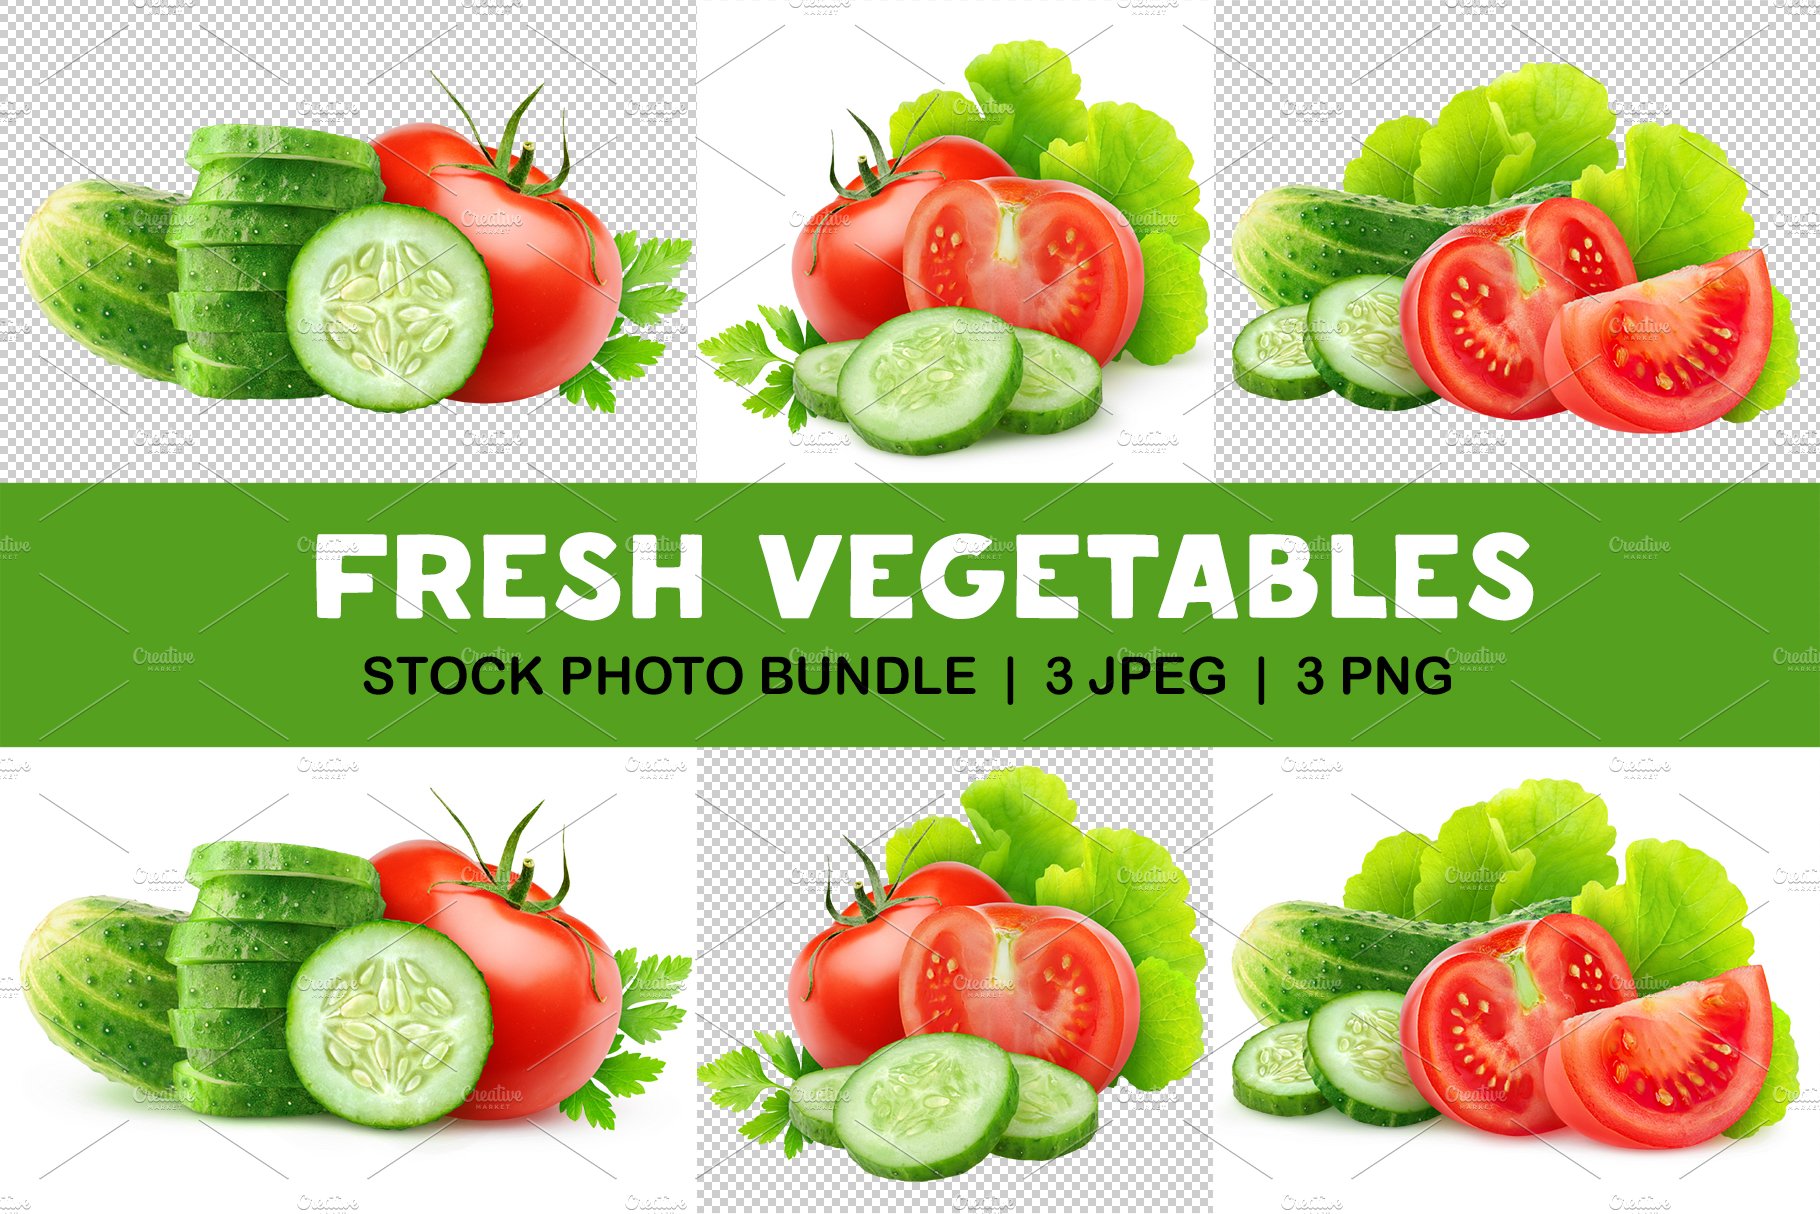 Fresh salad vegetables cover image.